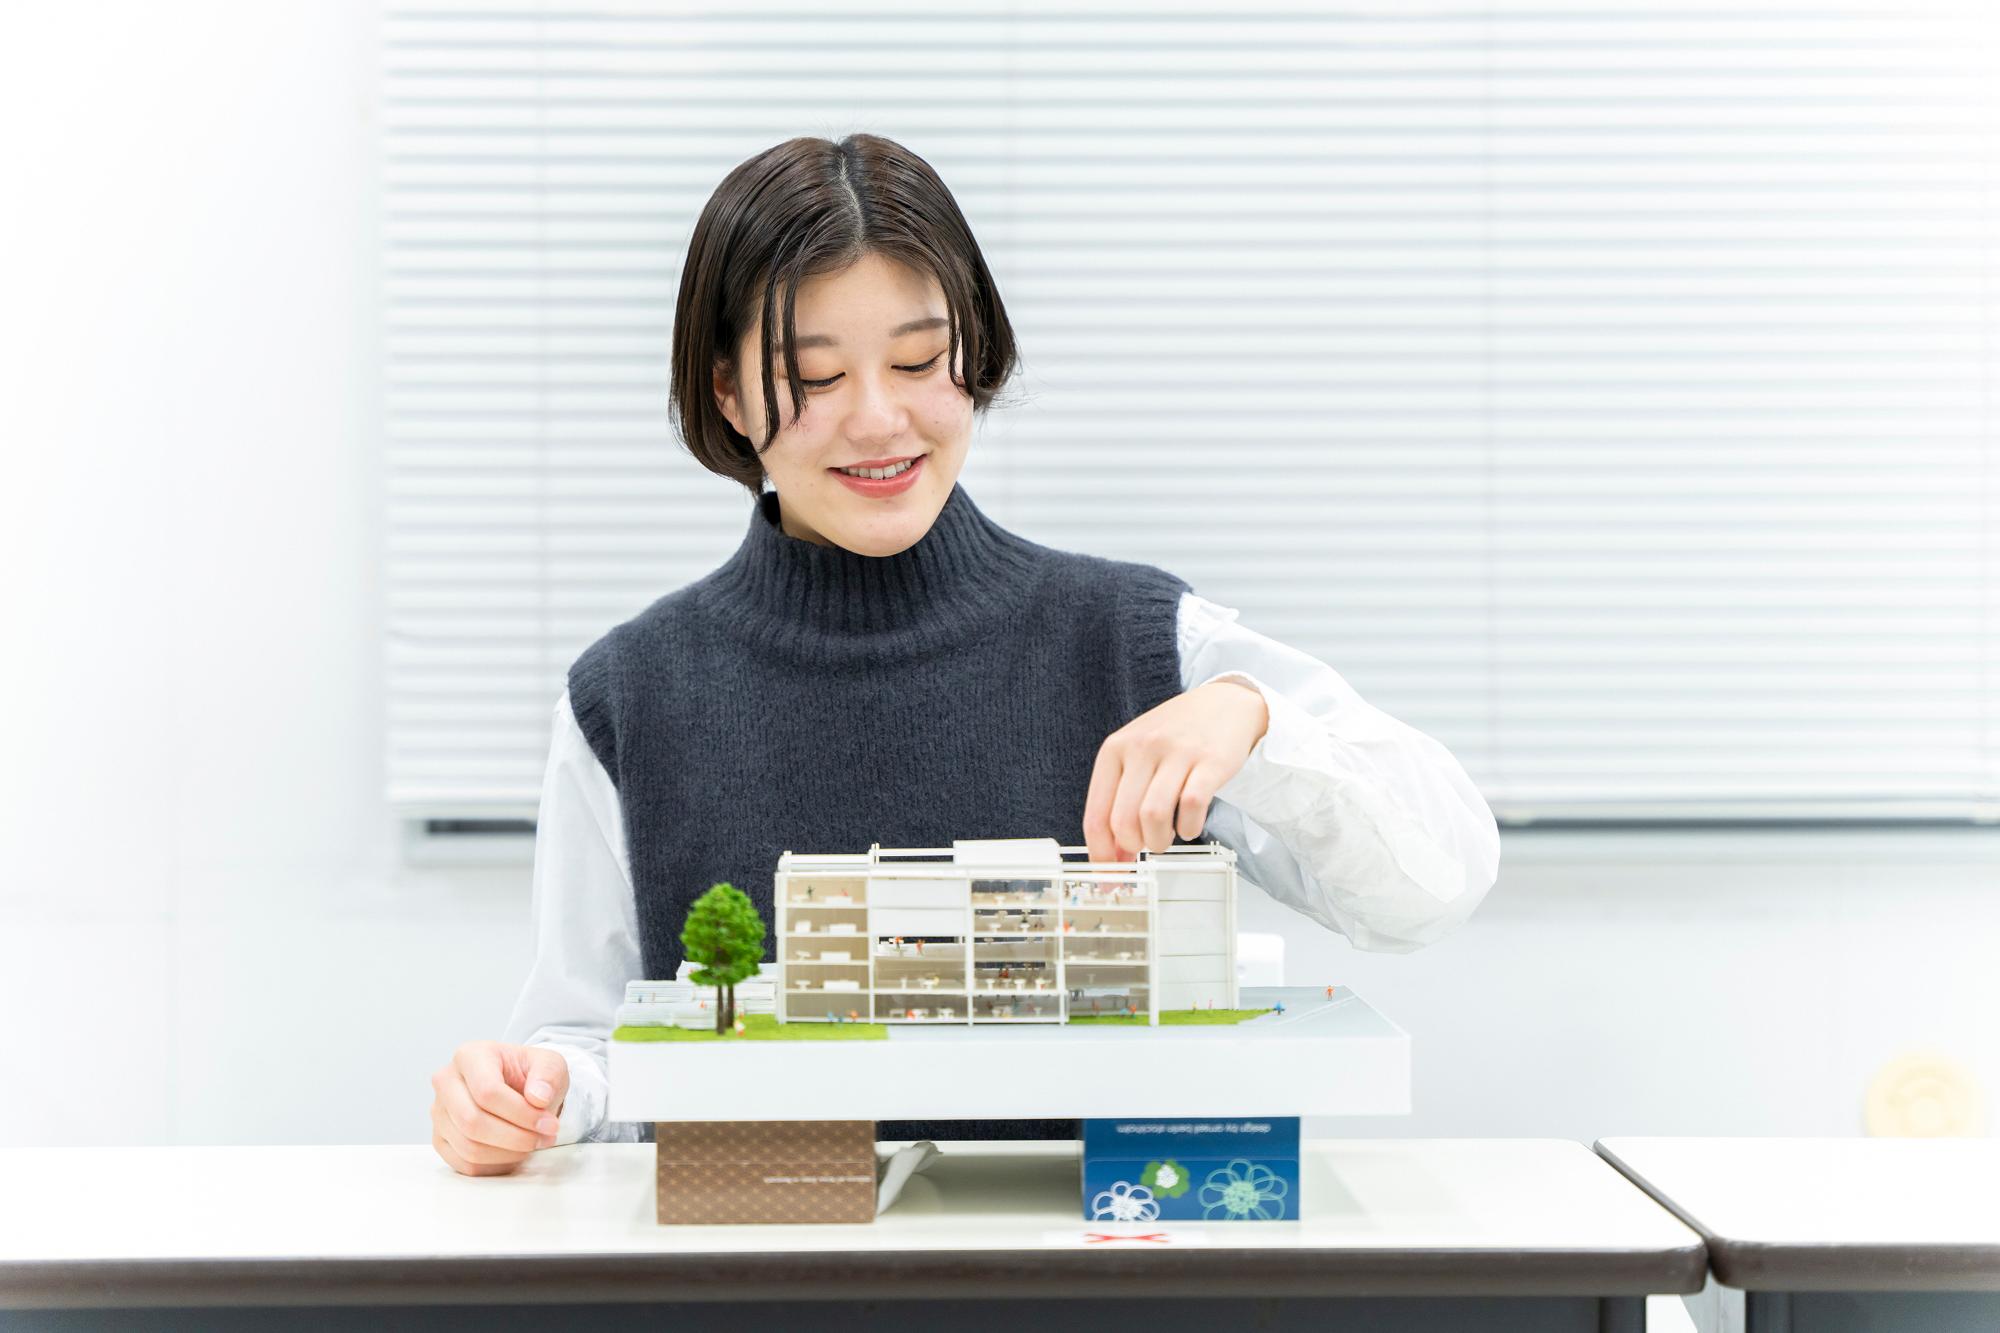 新潟工科大学の学生1名が、楽しそうに建築模型を作成している写真